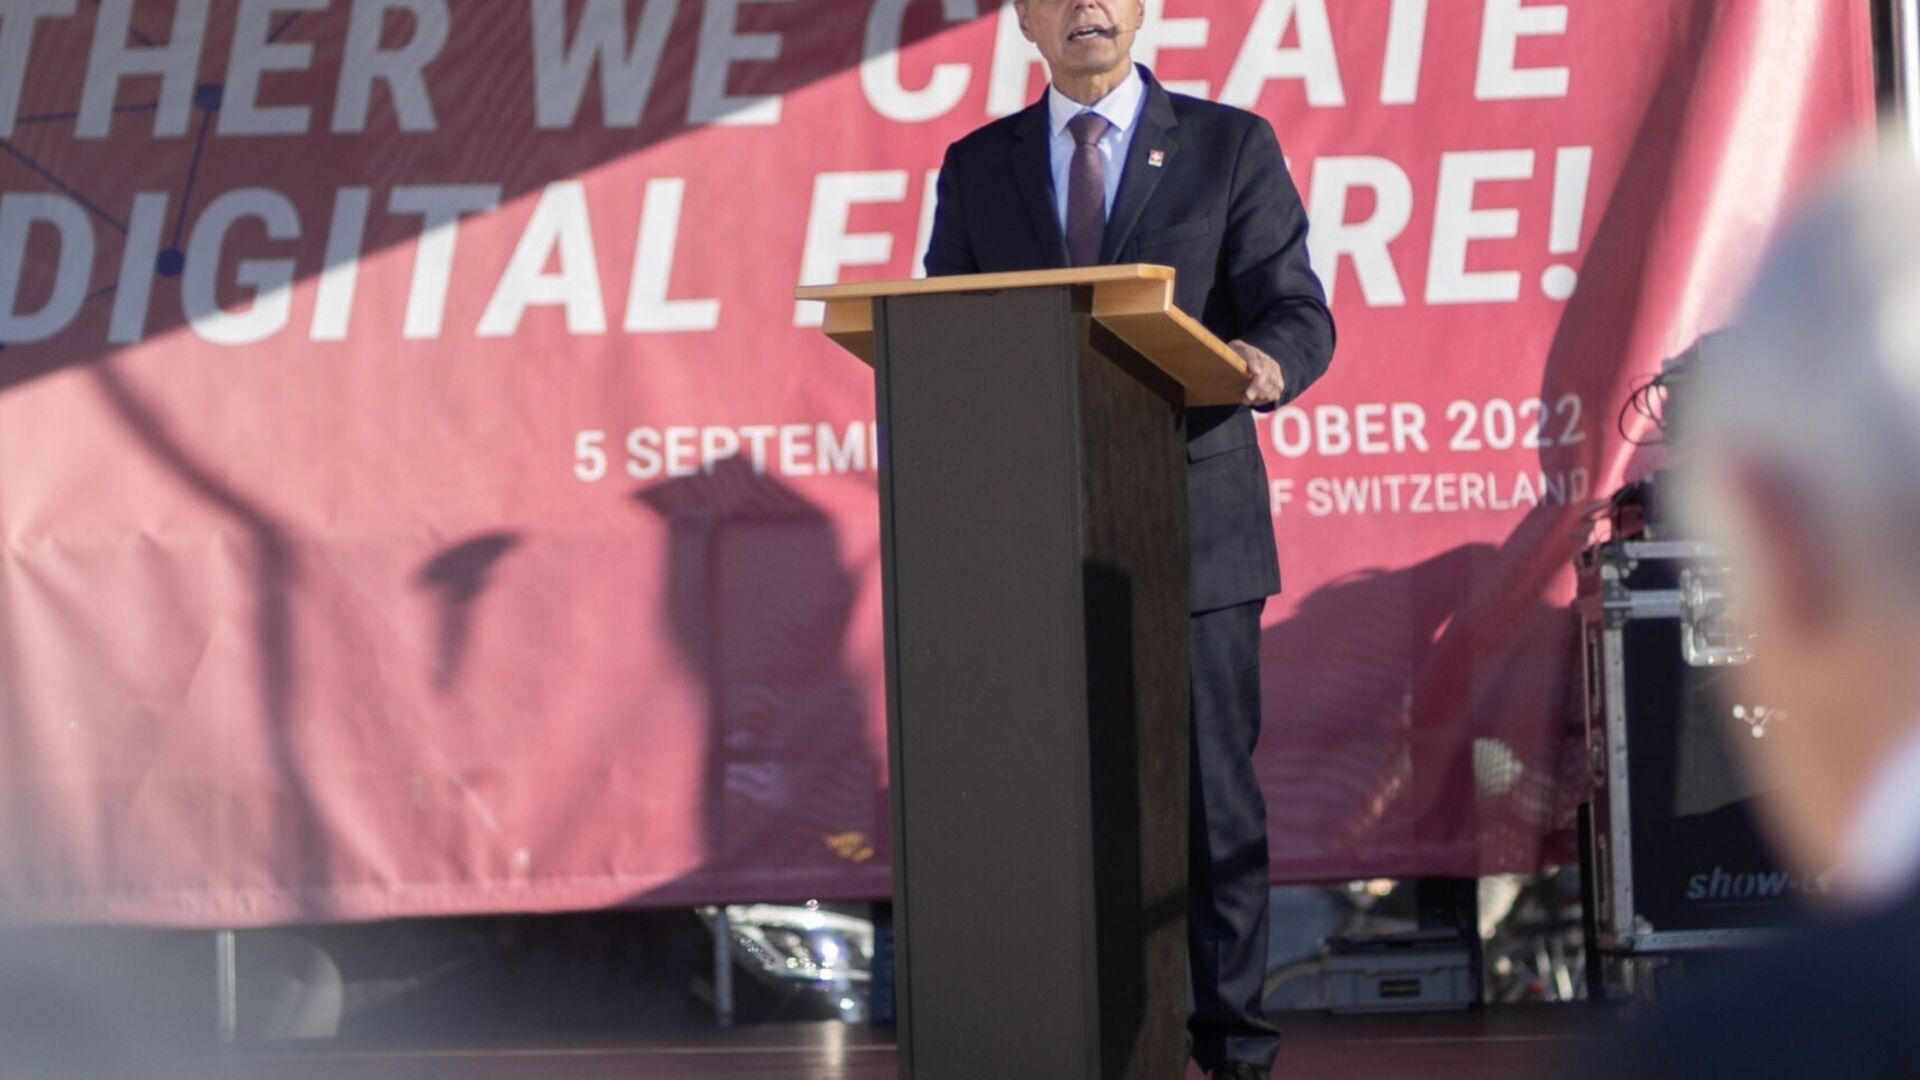 „Jurnalele digitale elvețiene” 2022 au fost inaugurate la Berna pe 5 septembrie.Președintele Confederației Elvețiene, Ignazio Cassis, a participat la eveniment și a ținut un discurs